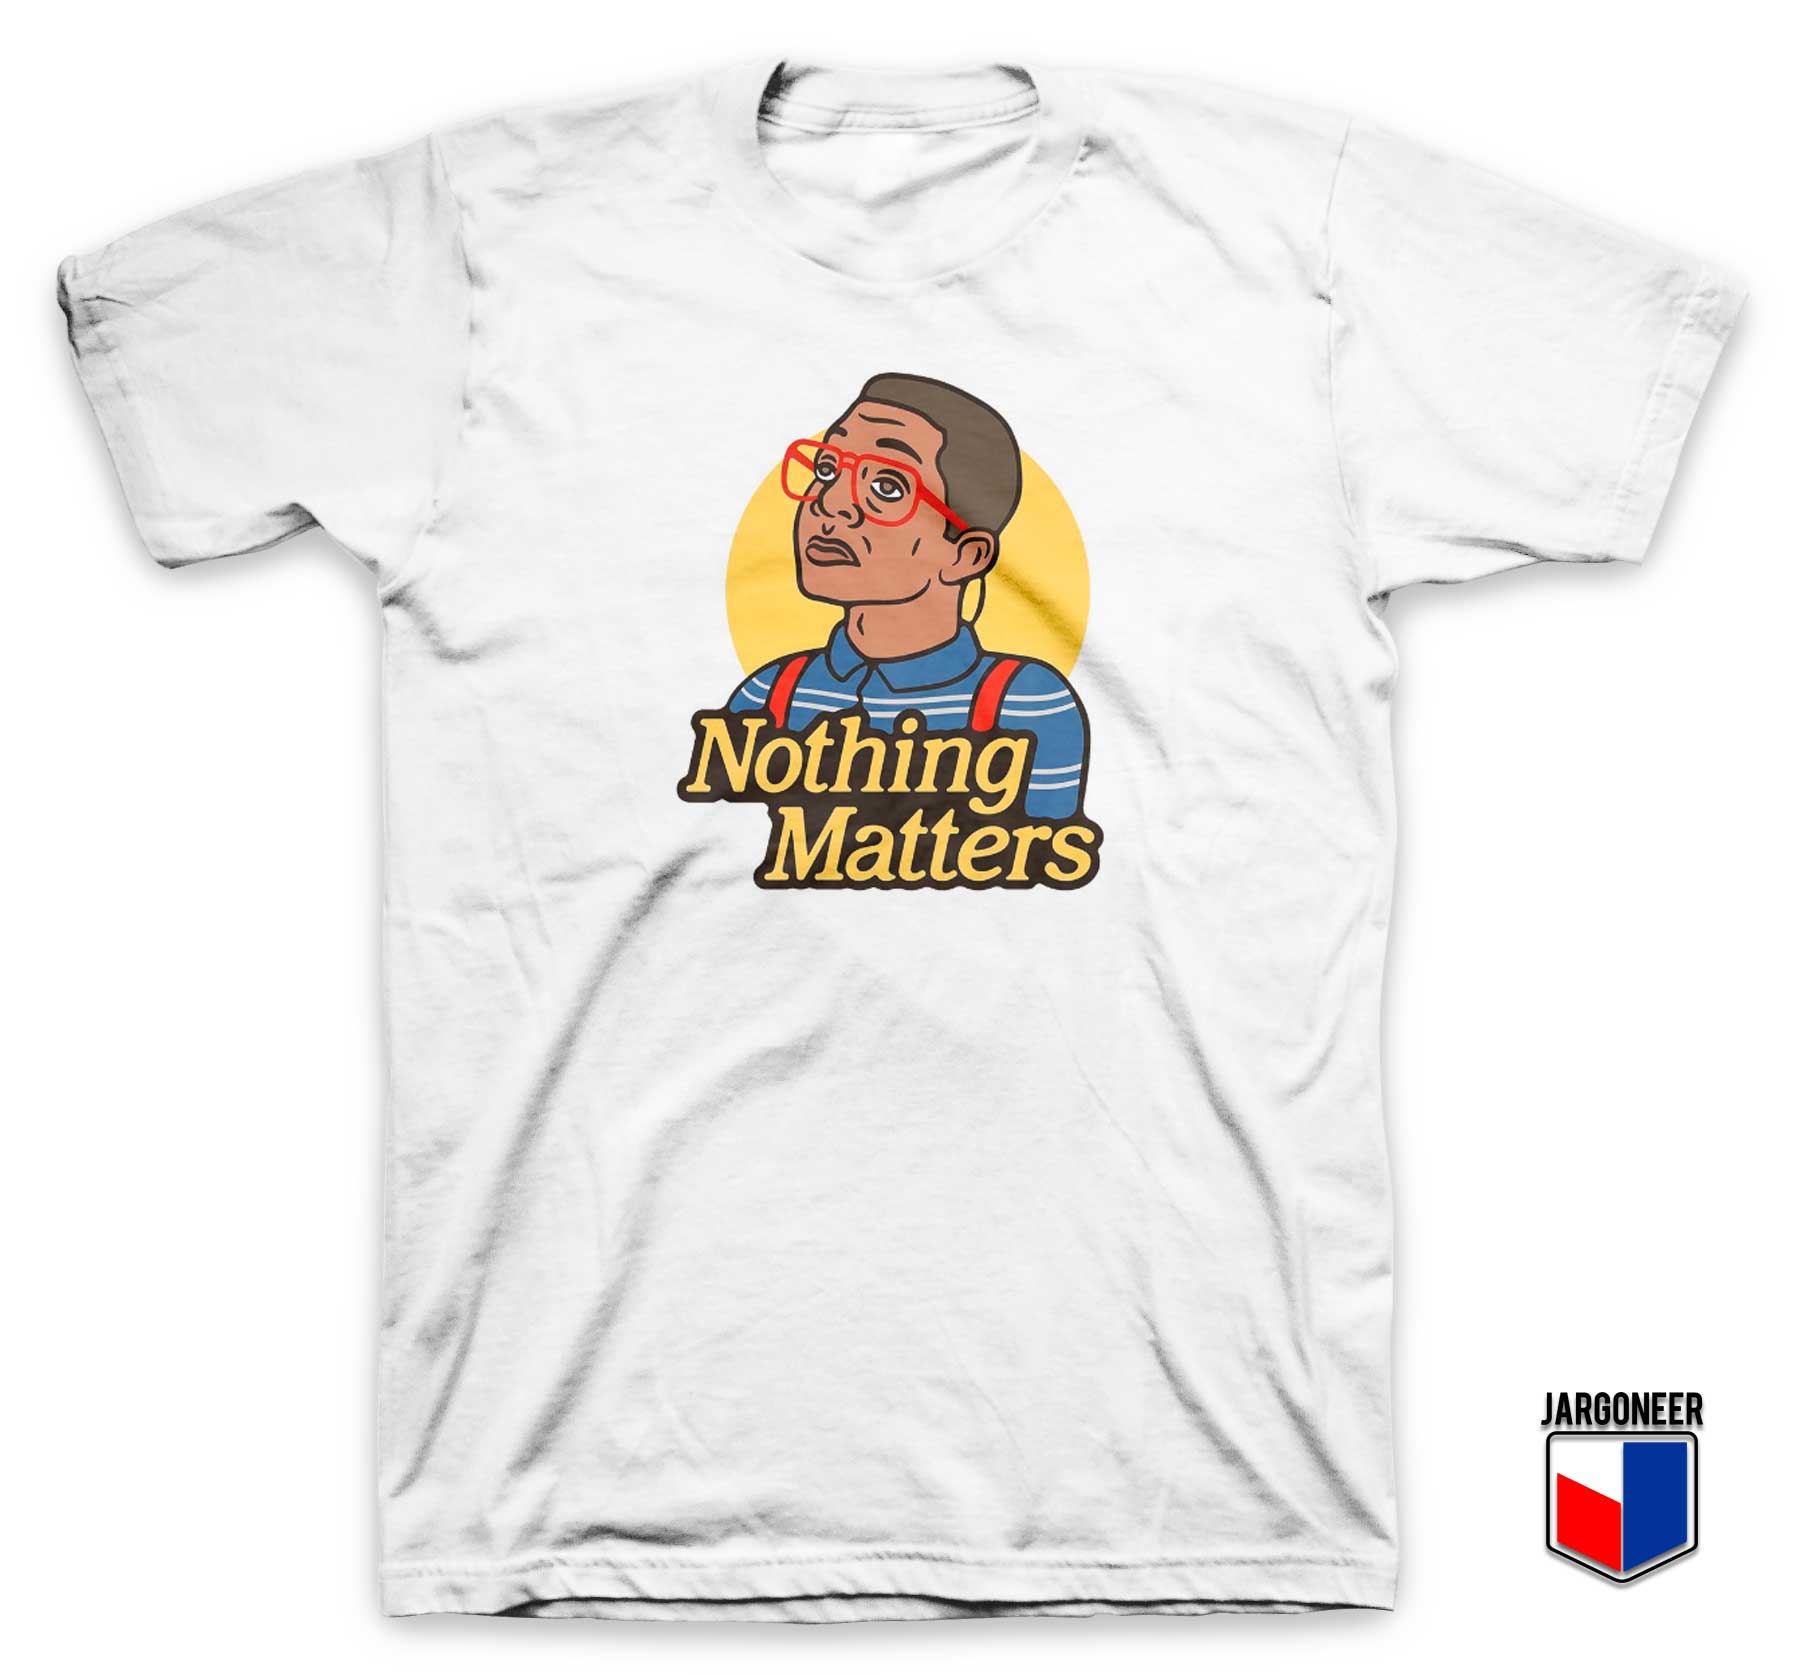 Nothing Matters T Shirt - Shop Unique Graphic Cool Shirt Designs